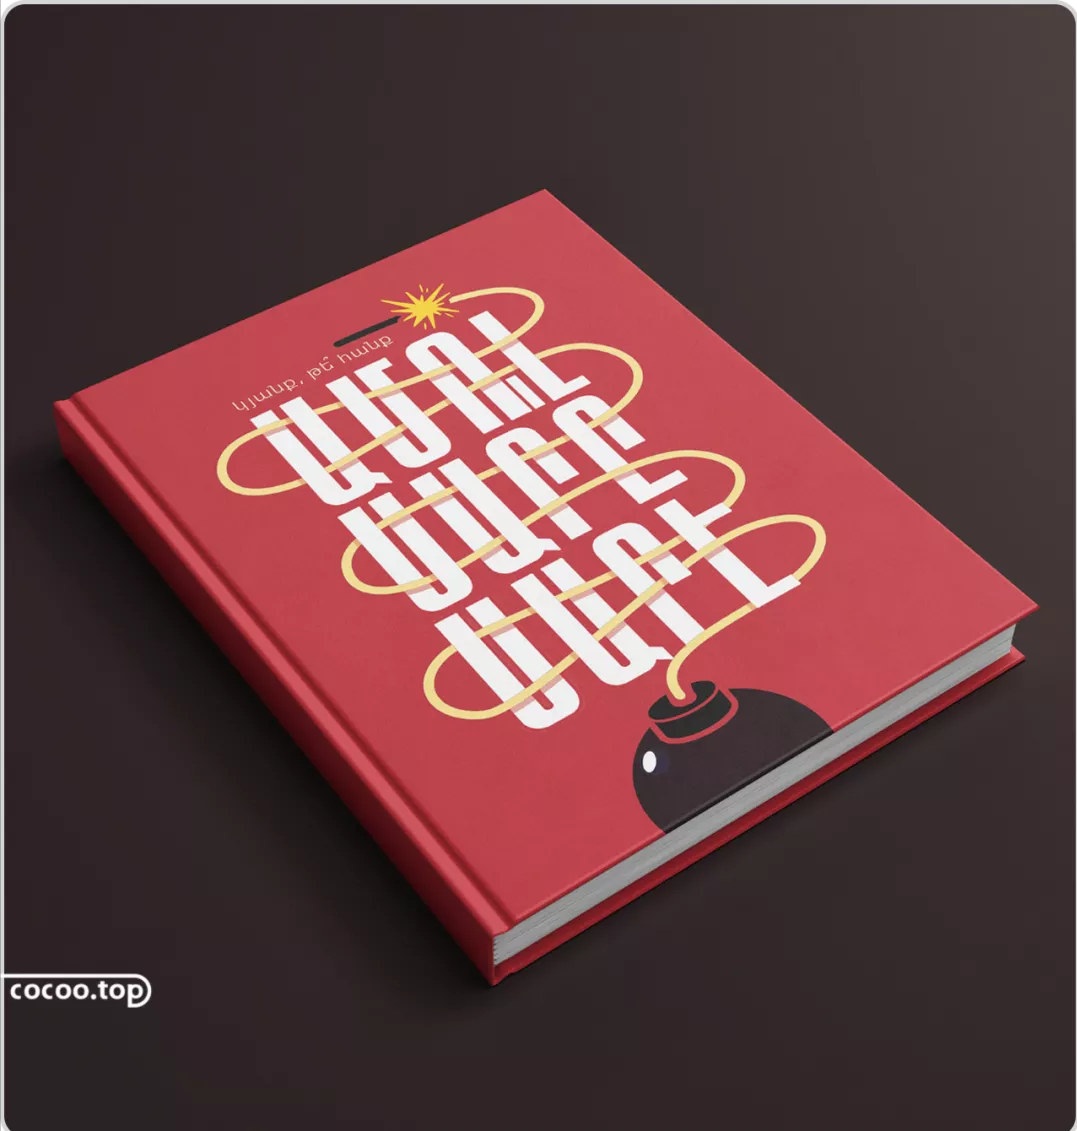 【设计干货】书籍封面设计文字运用小技巧